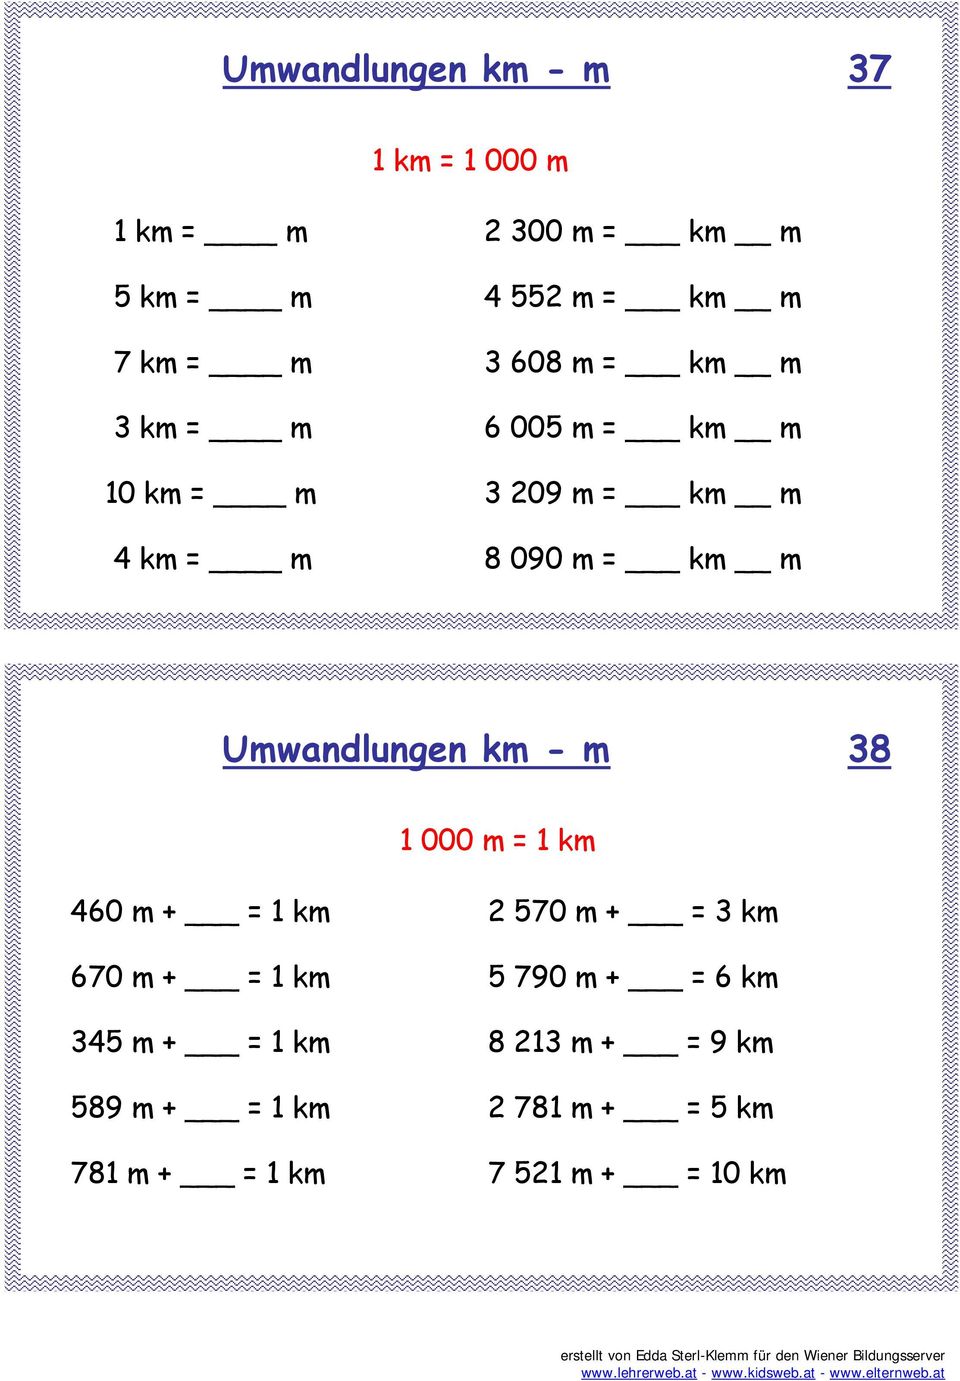 Umwandlungen km - m 38 1 000 m = 1 km 460 m + = 1 km 670 m + = 1 km 345 m + = 1 km 589 m + = 1